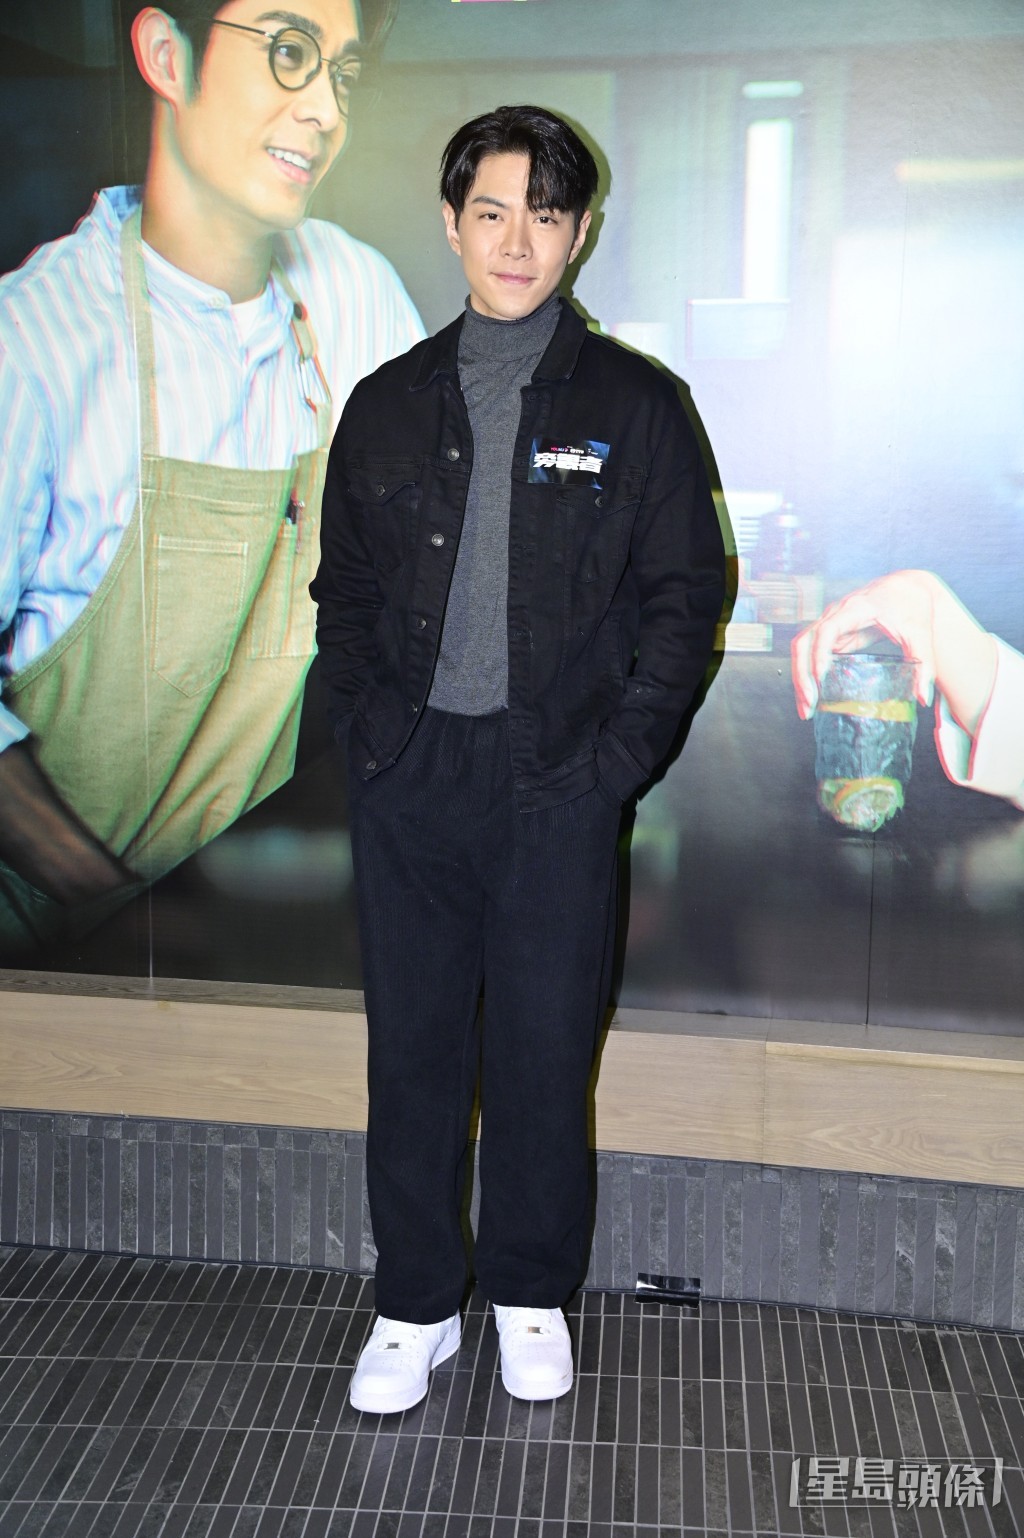 羅天宇透露將參與一套以ICAC作為題材的劇集之演出，該劇集合五位電影導演分別拍攝五個單元。